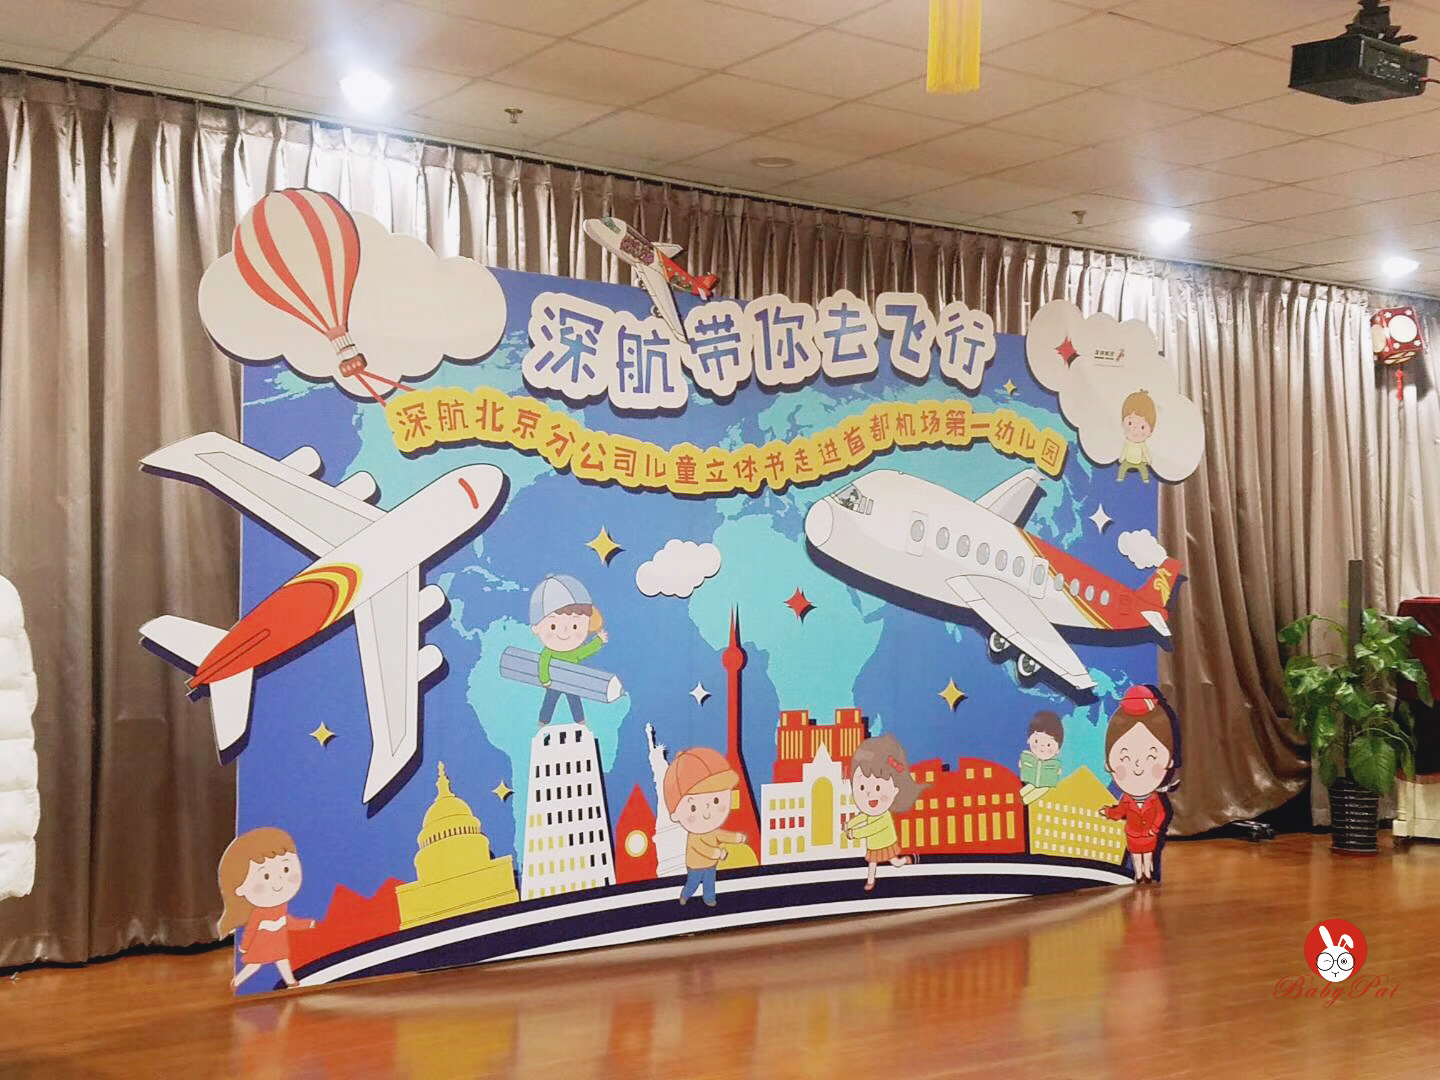 深圳航空公司走进首都机场第一幼儿园航空主题派对